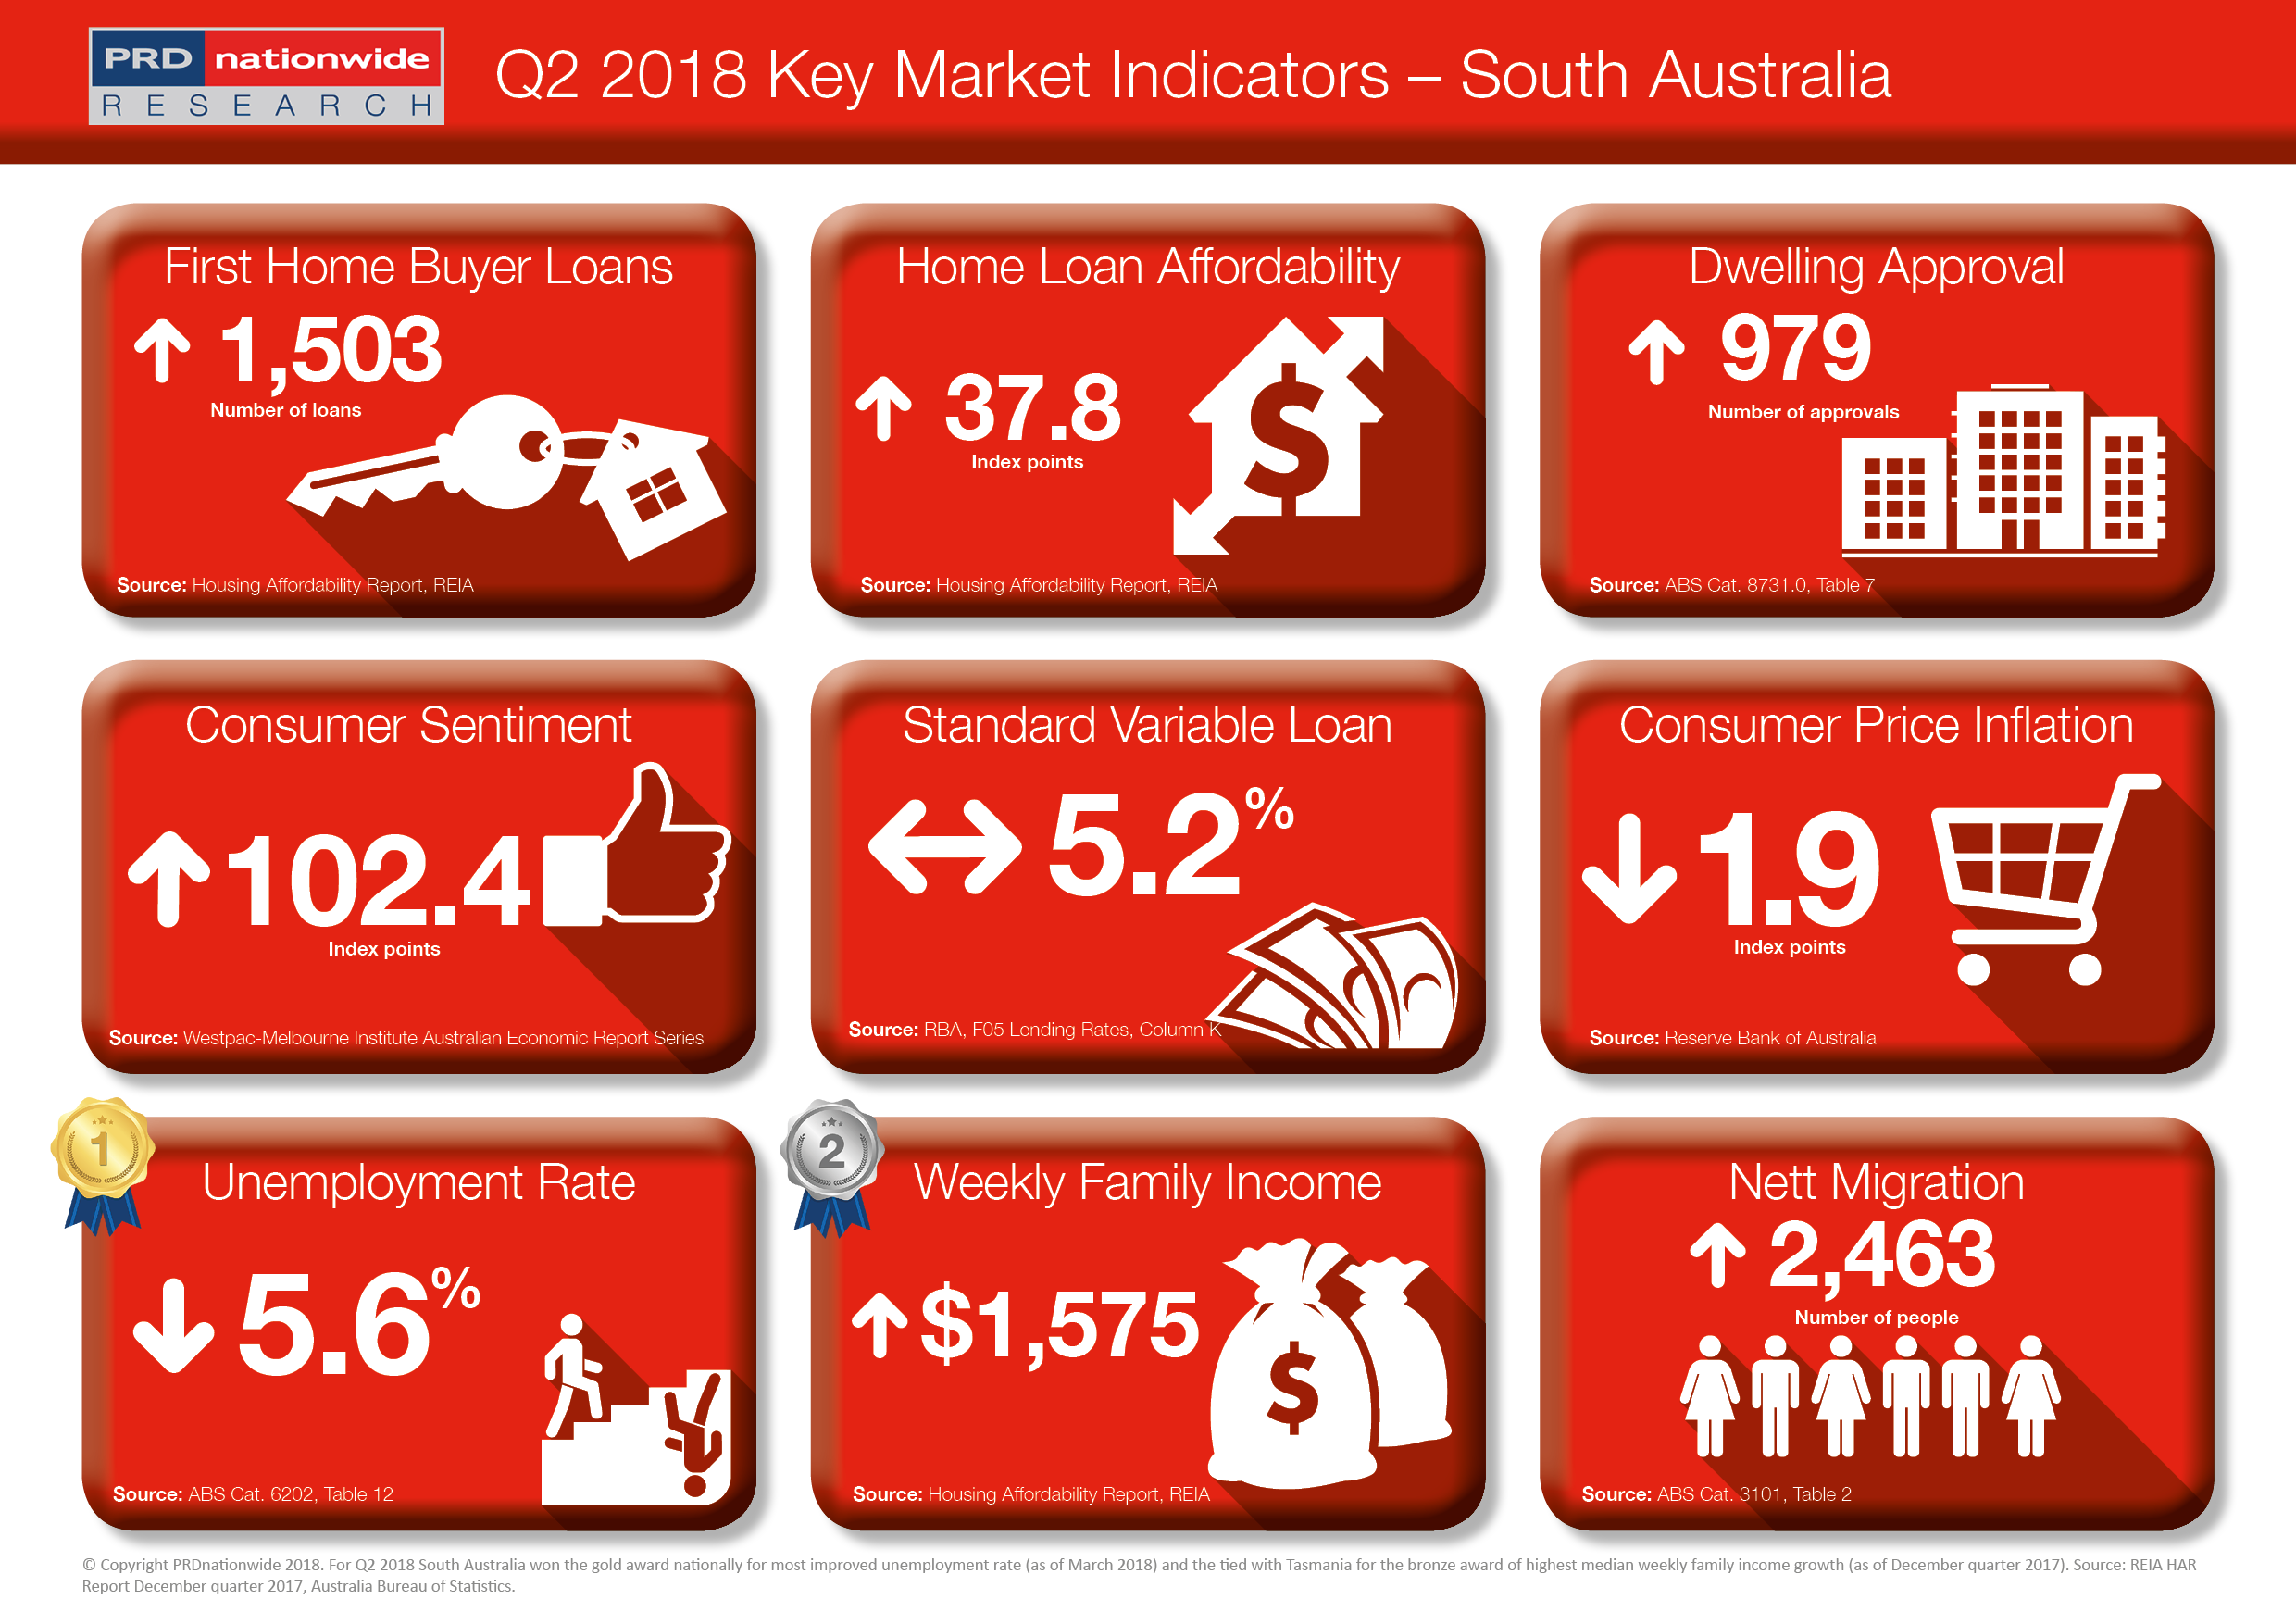 PRD Q2 Key Market Indicators 2018 - SA.png